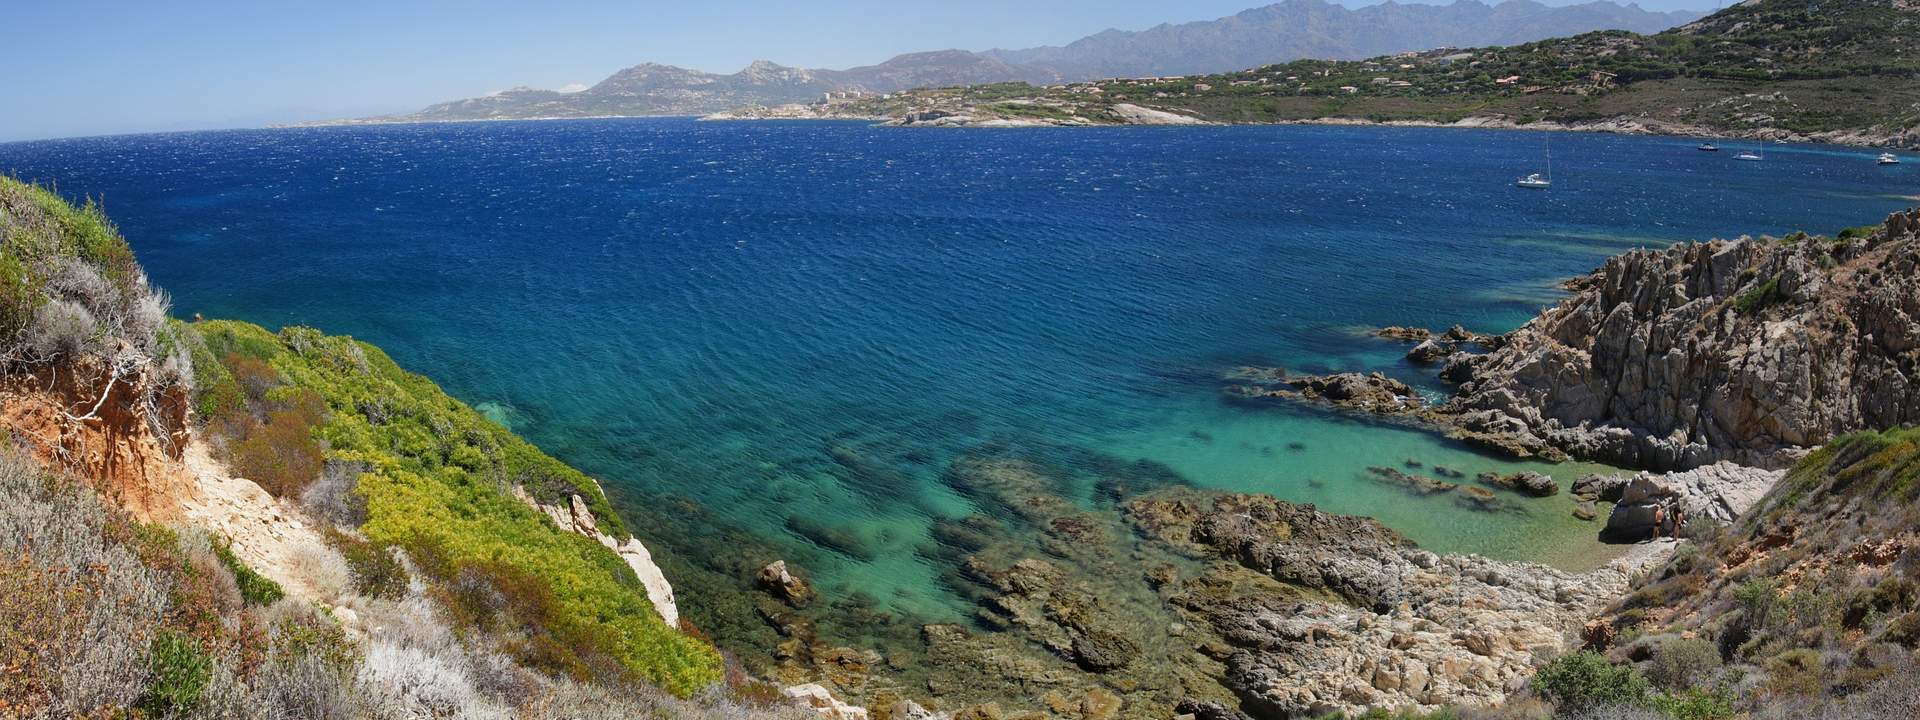 Entdecken Sie Korsika, die Insel der Schönheit